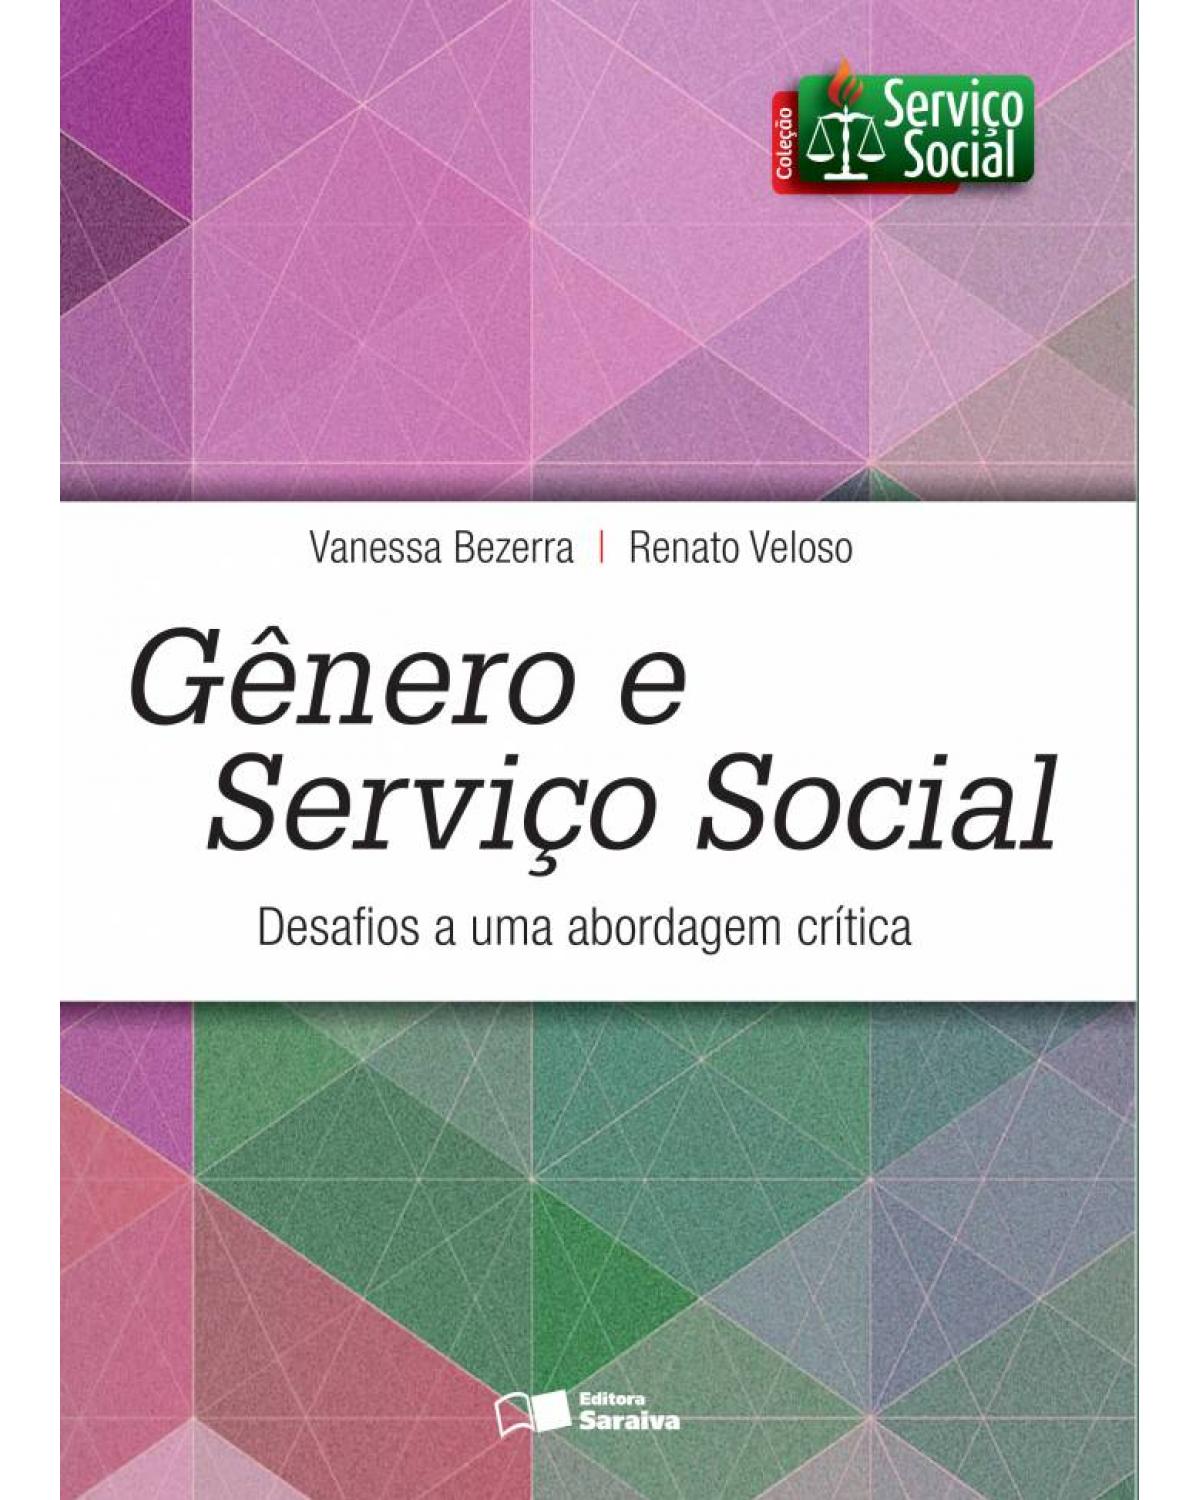 Gênero e serviço social - desafios a uma abordagem crítica - 1ª Edição | 2015